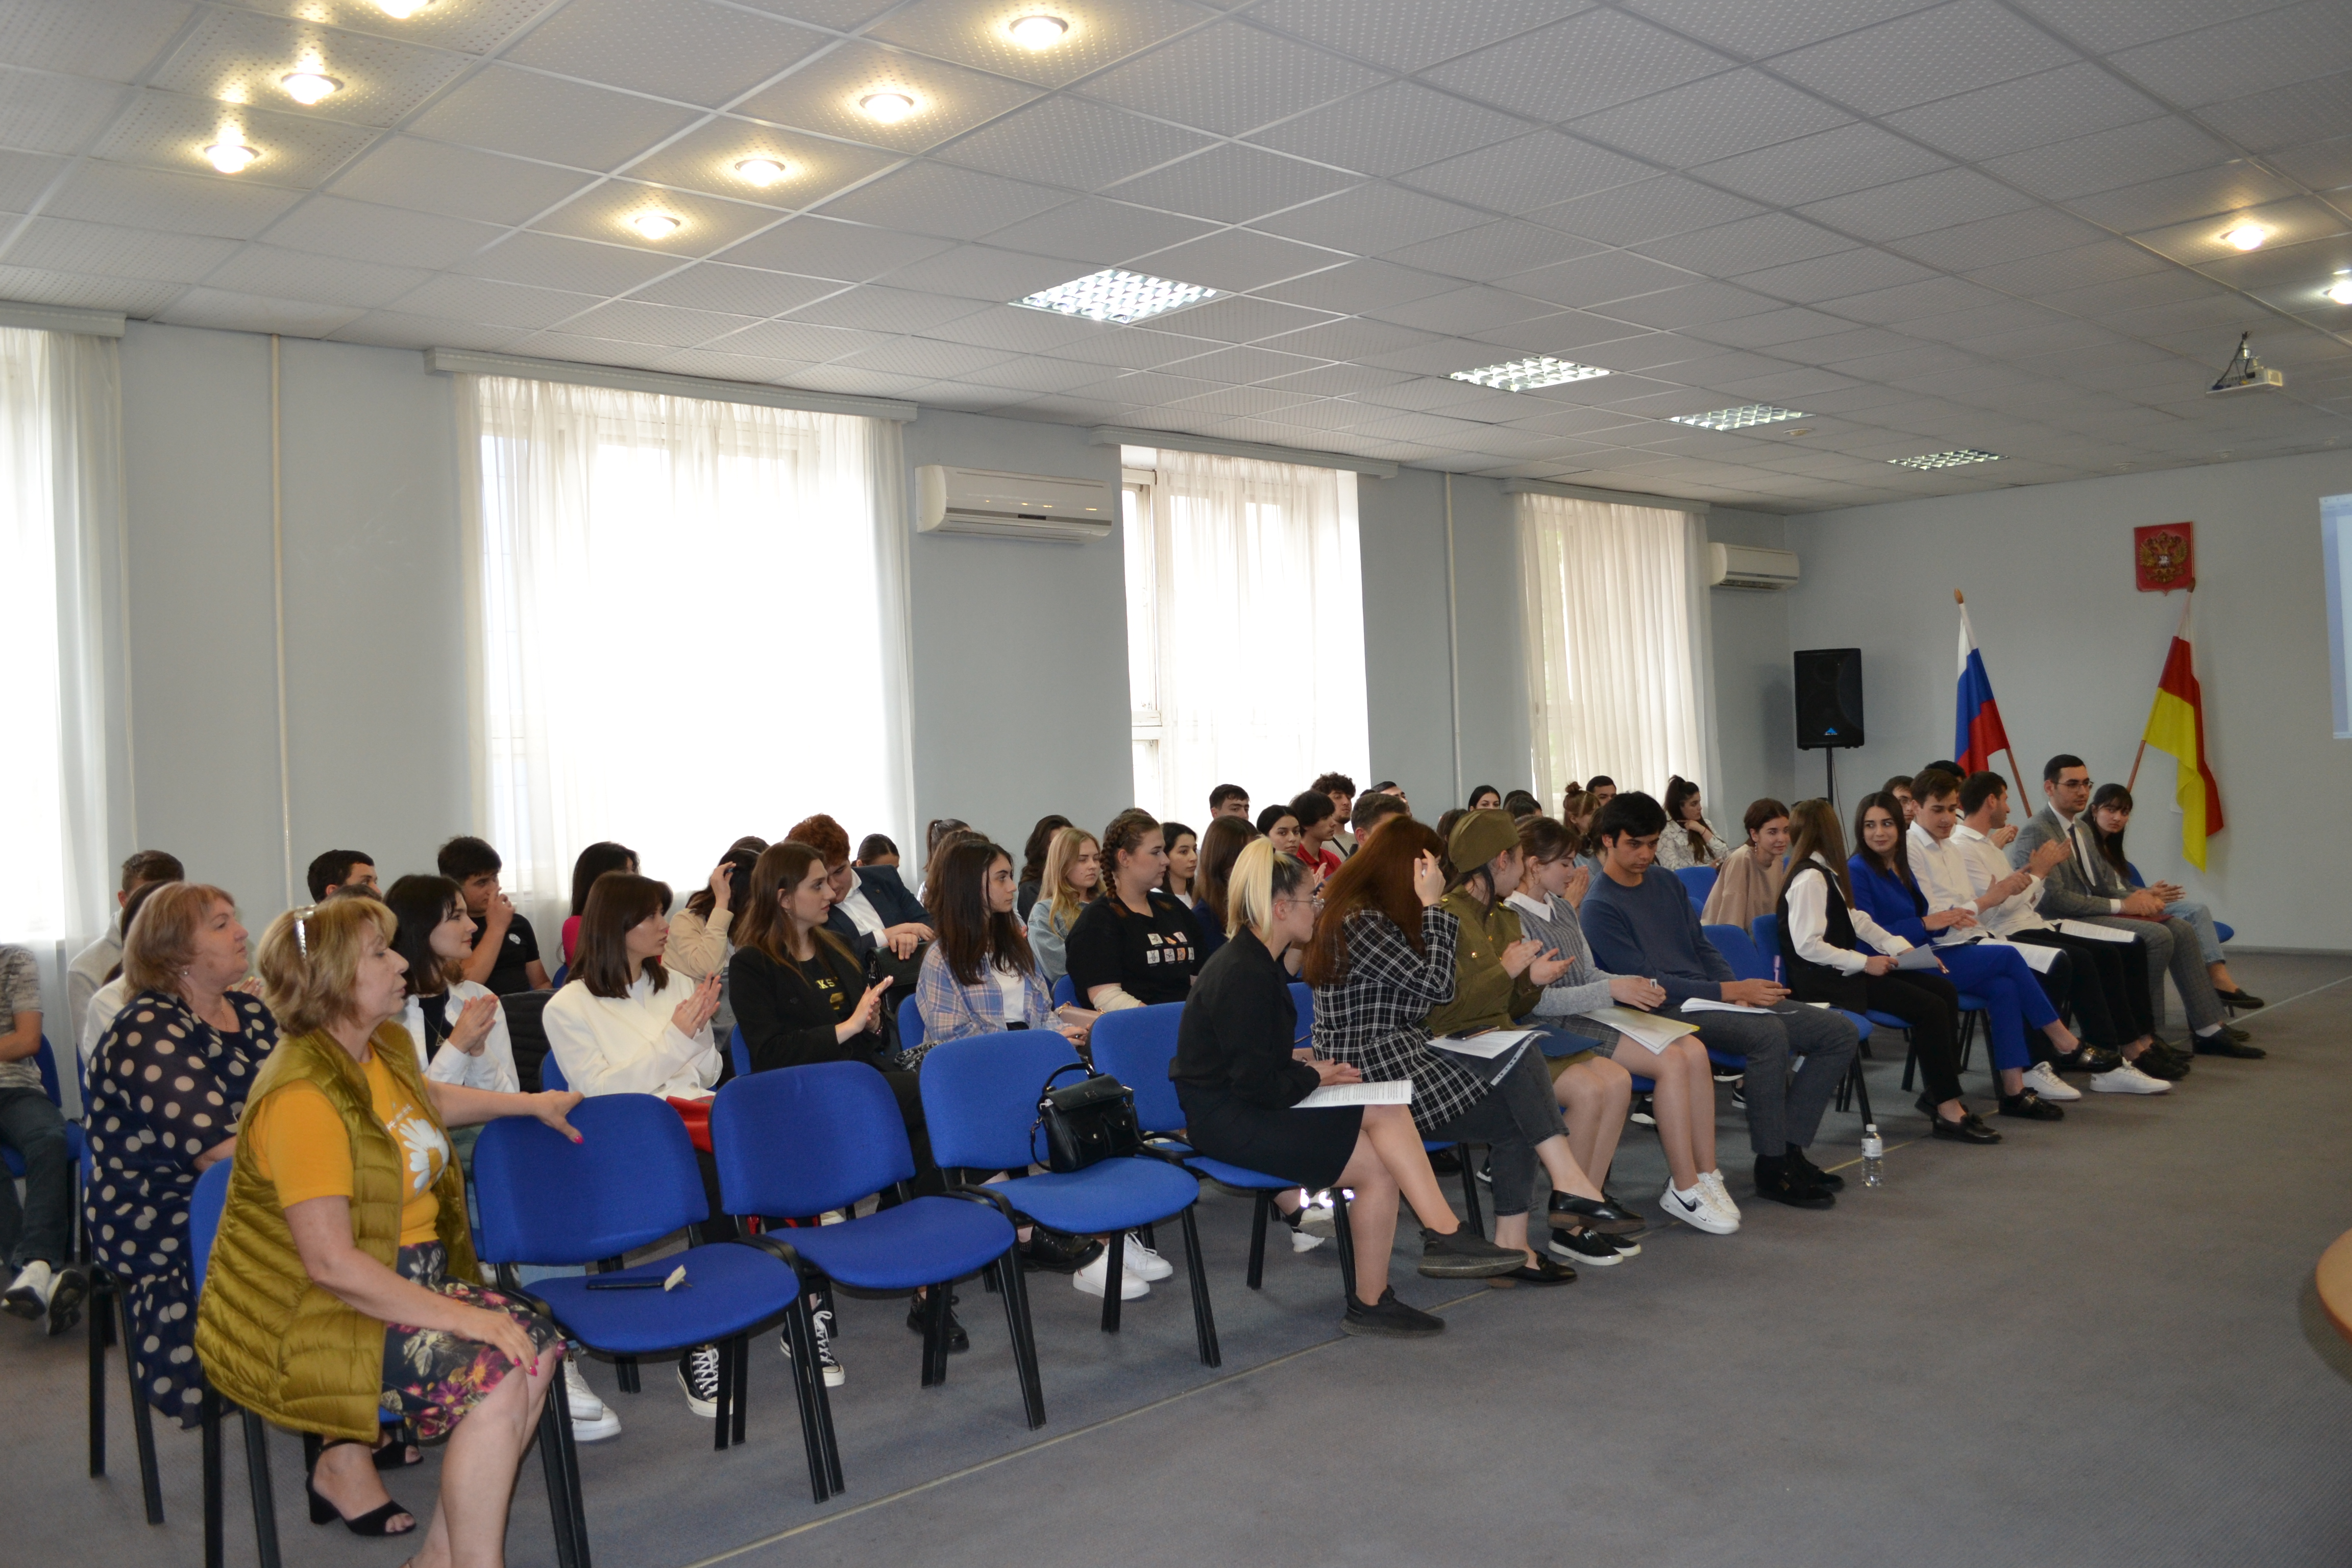 Во Владикавказском институте управления состоялся финал конкурса «Лучший студент года» 